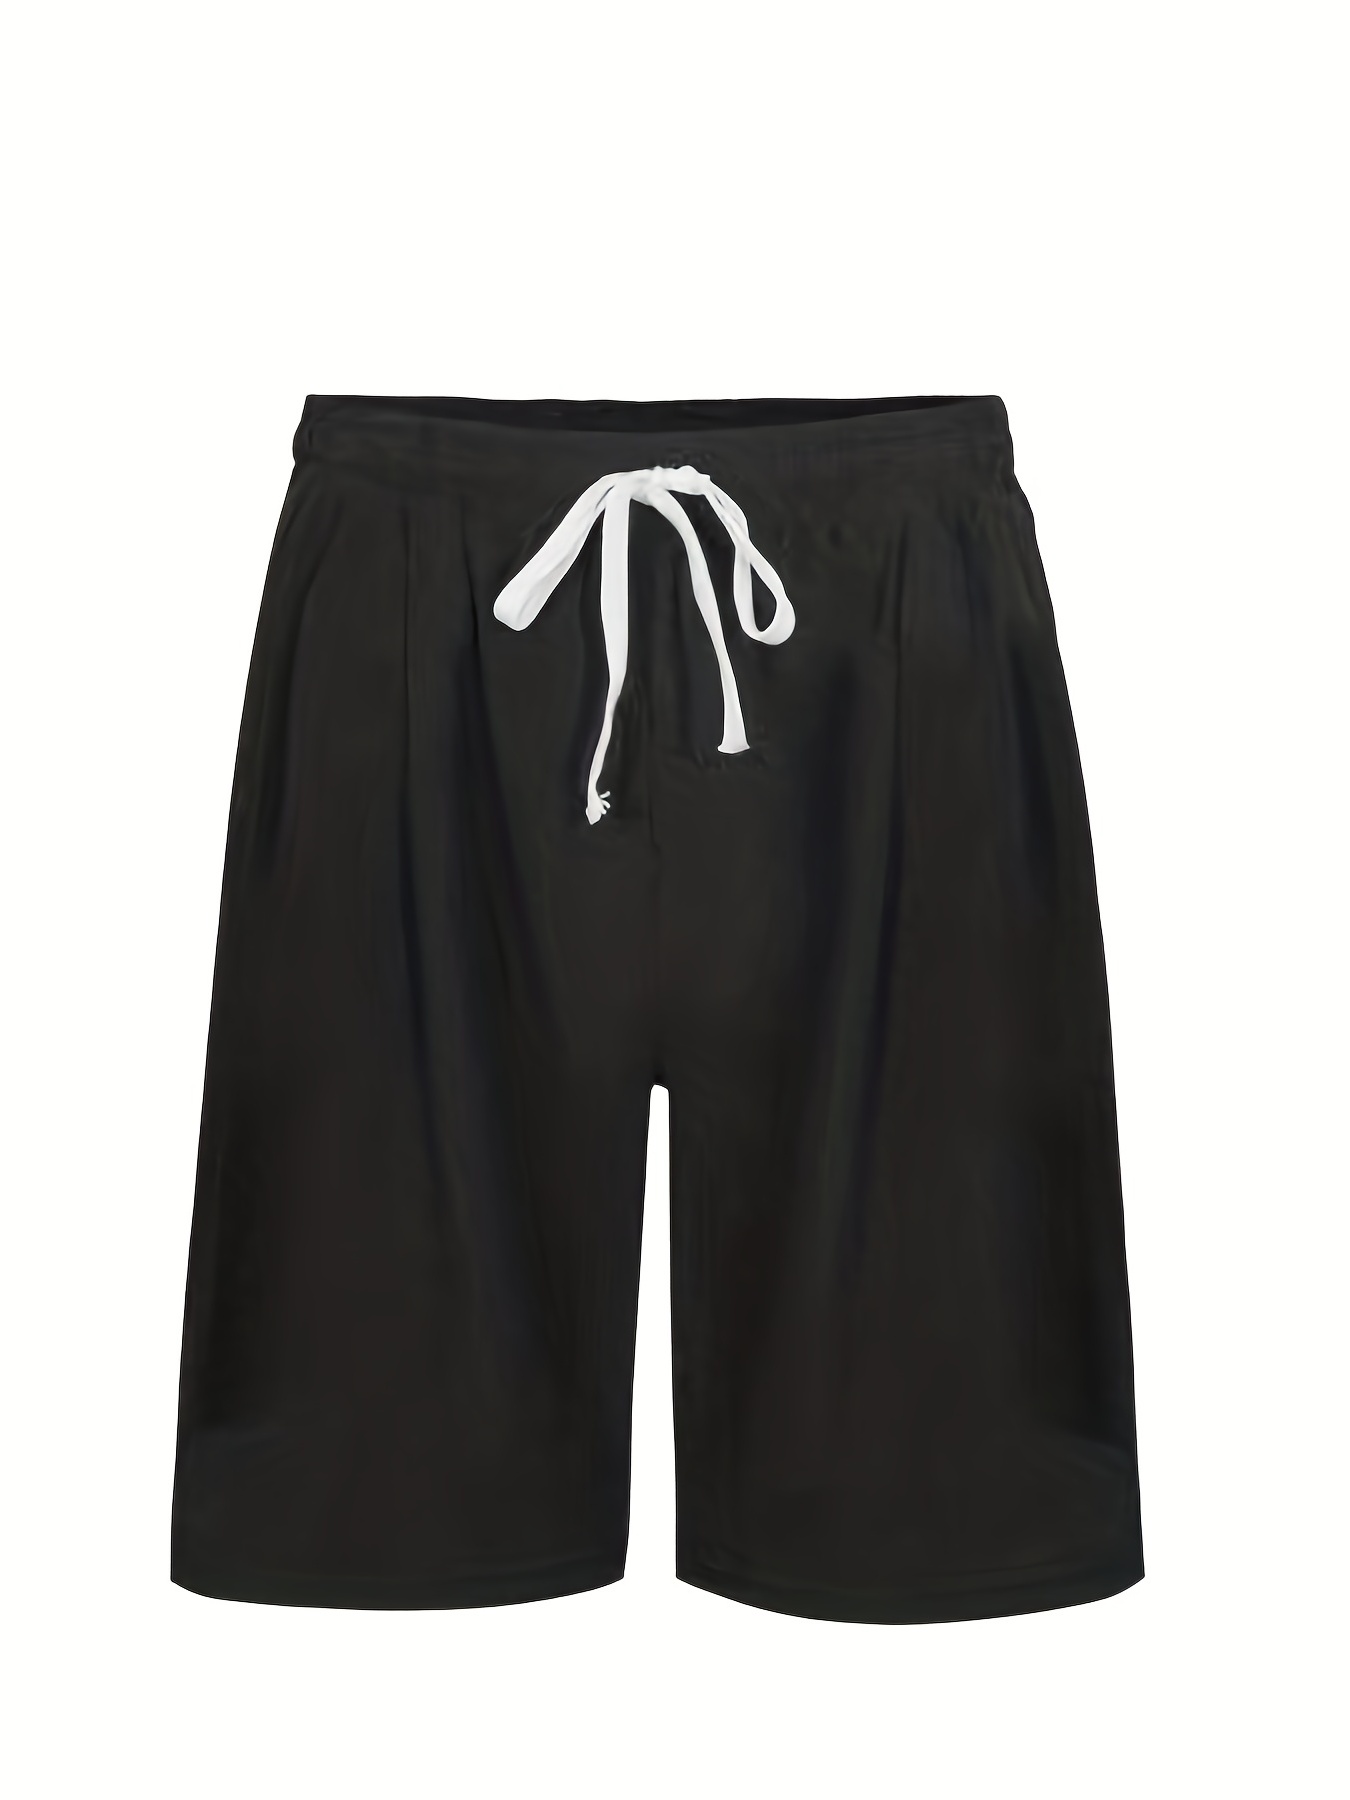 Plus Size Shorts Hombres Sólidos Transpirables Secado Rápido - Temu